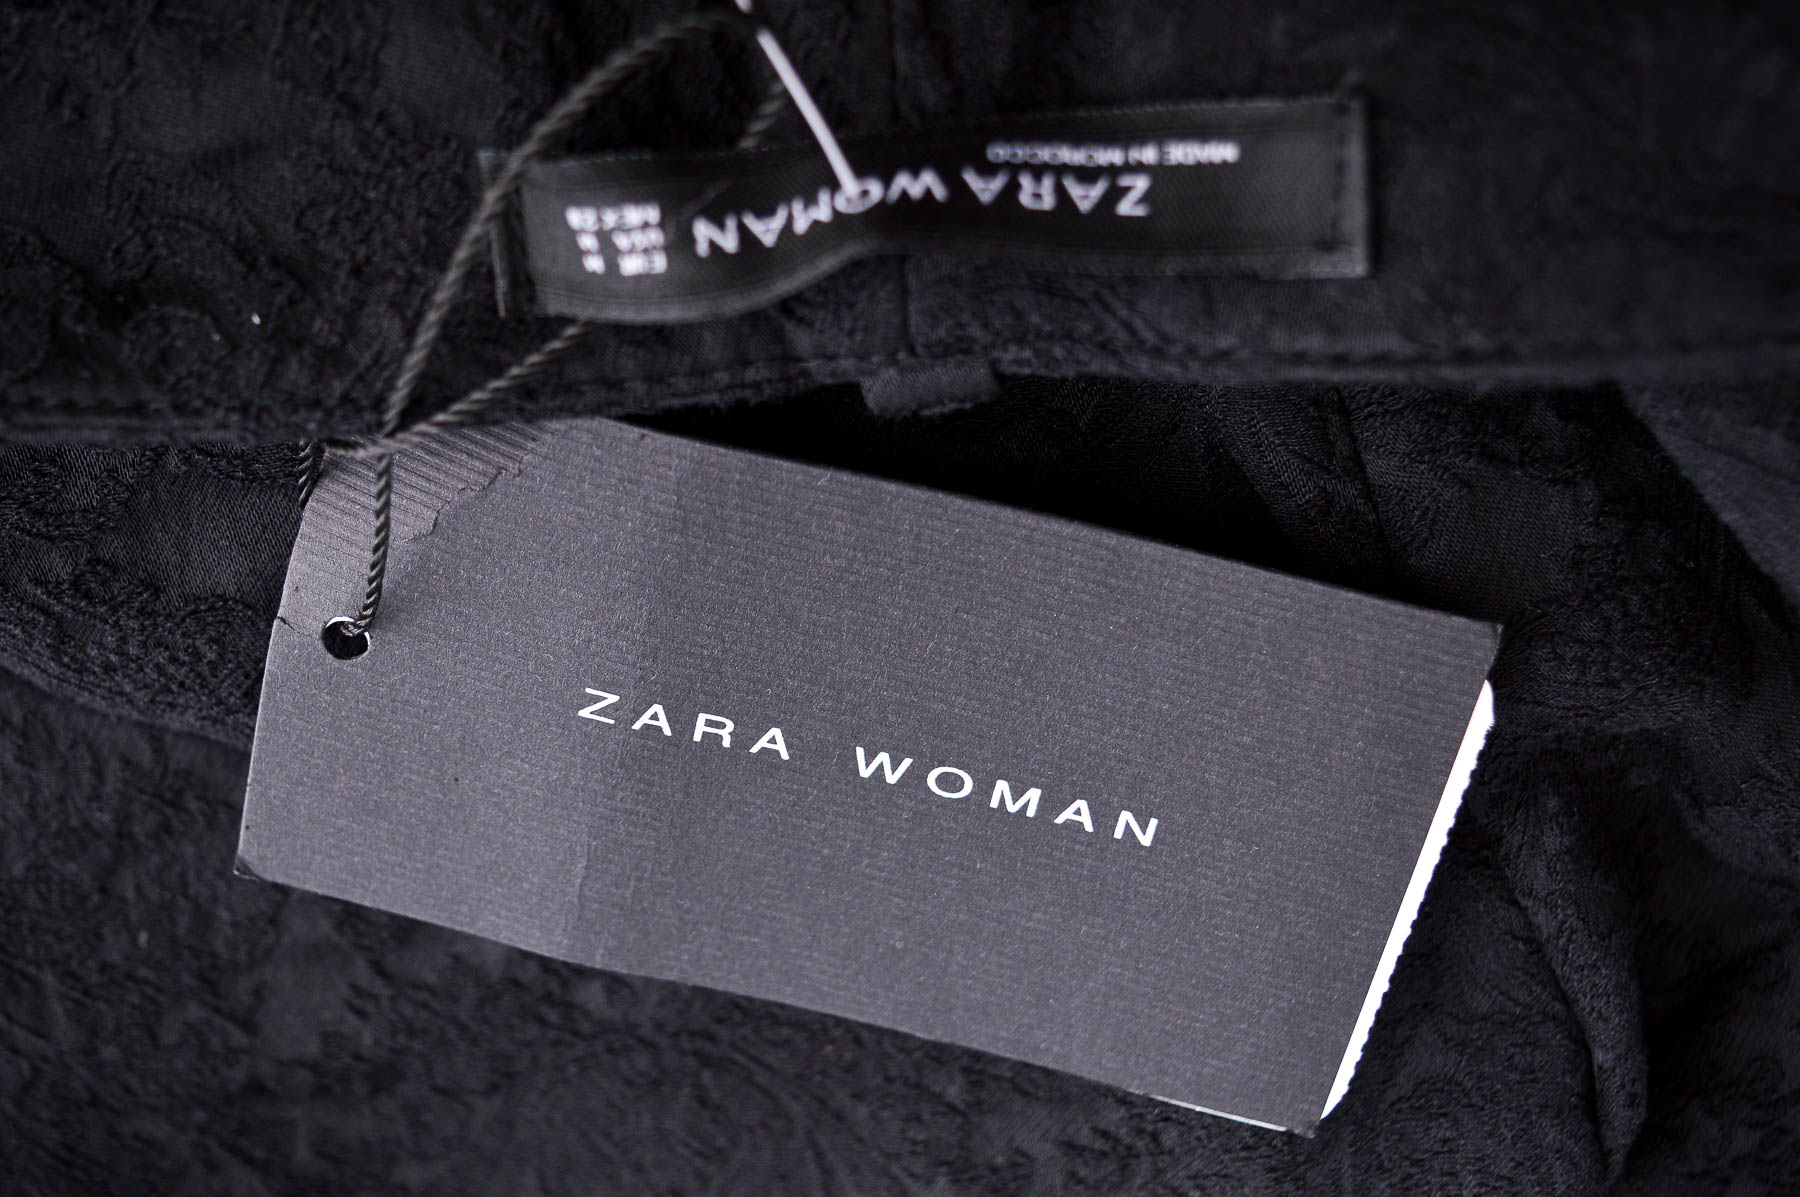 Γυναικεία παντελόνια - ZARA Woman - 2